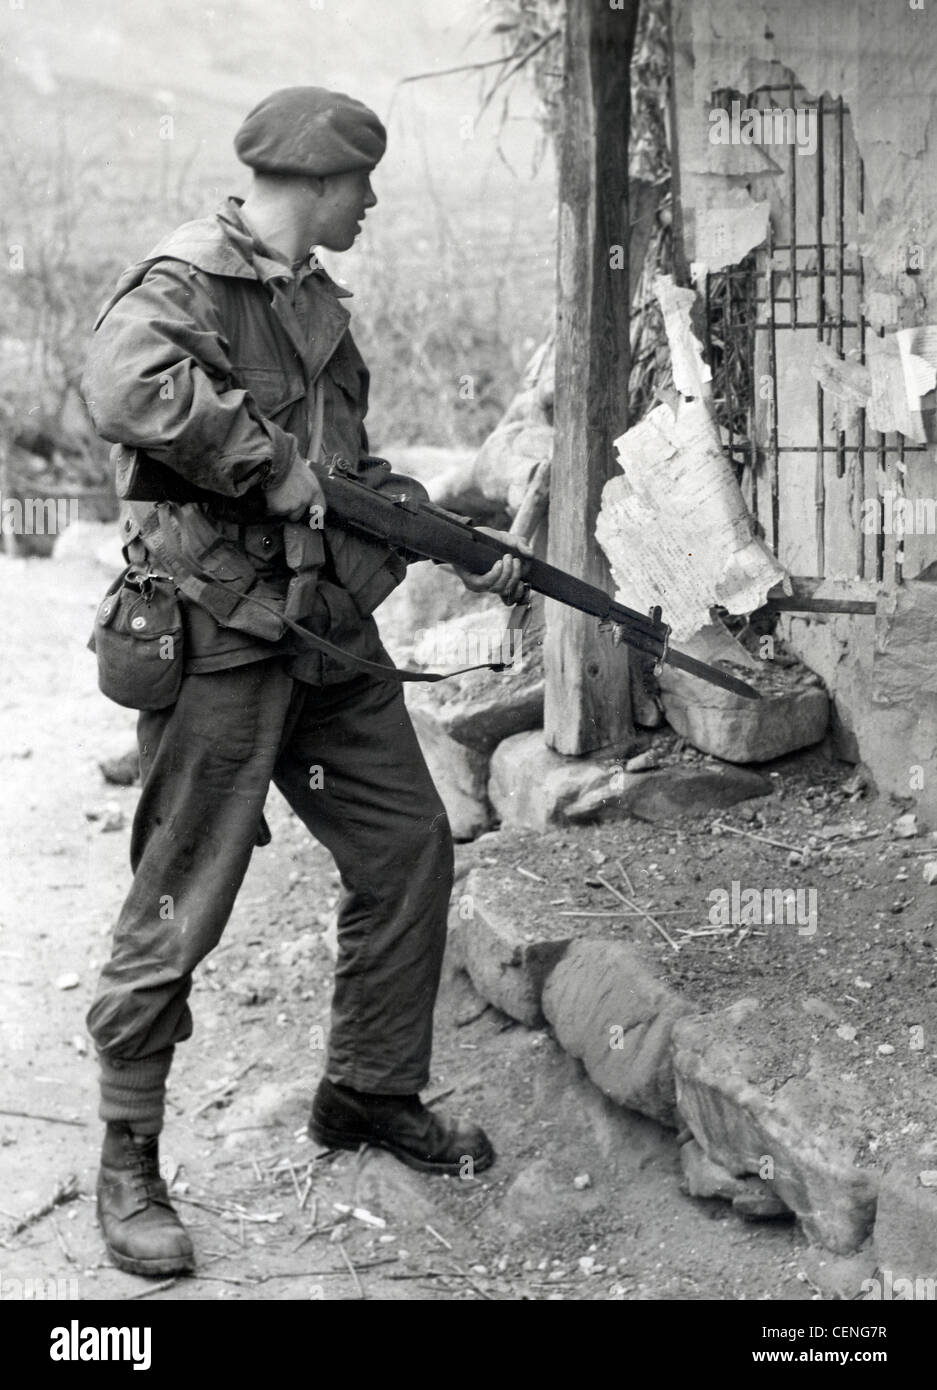 Royal Marine Commando in Aktion im Korea-Krieg bewaffnet mit einem amerikanischen Garand Gewehr. Stockfoto